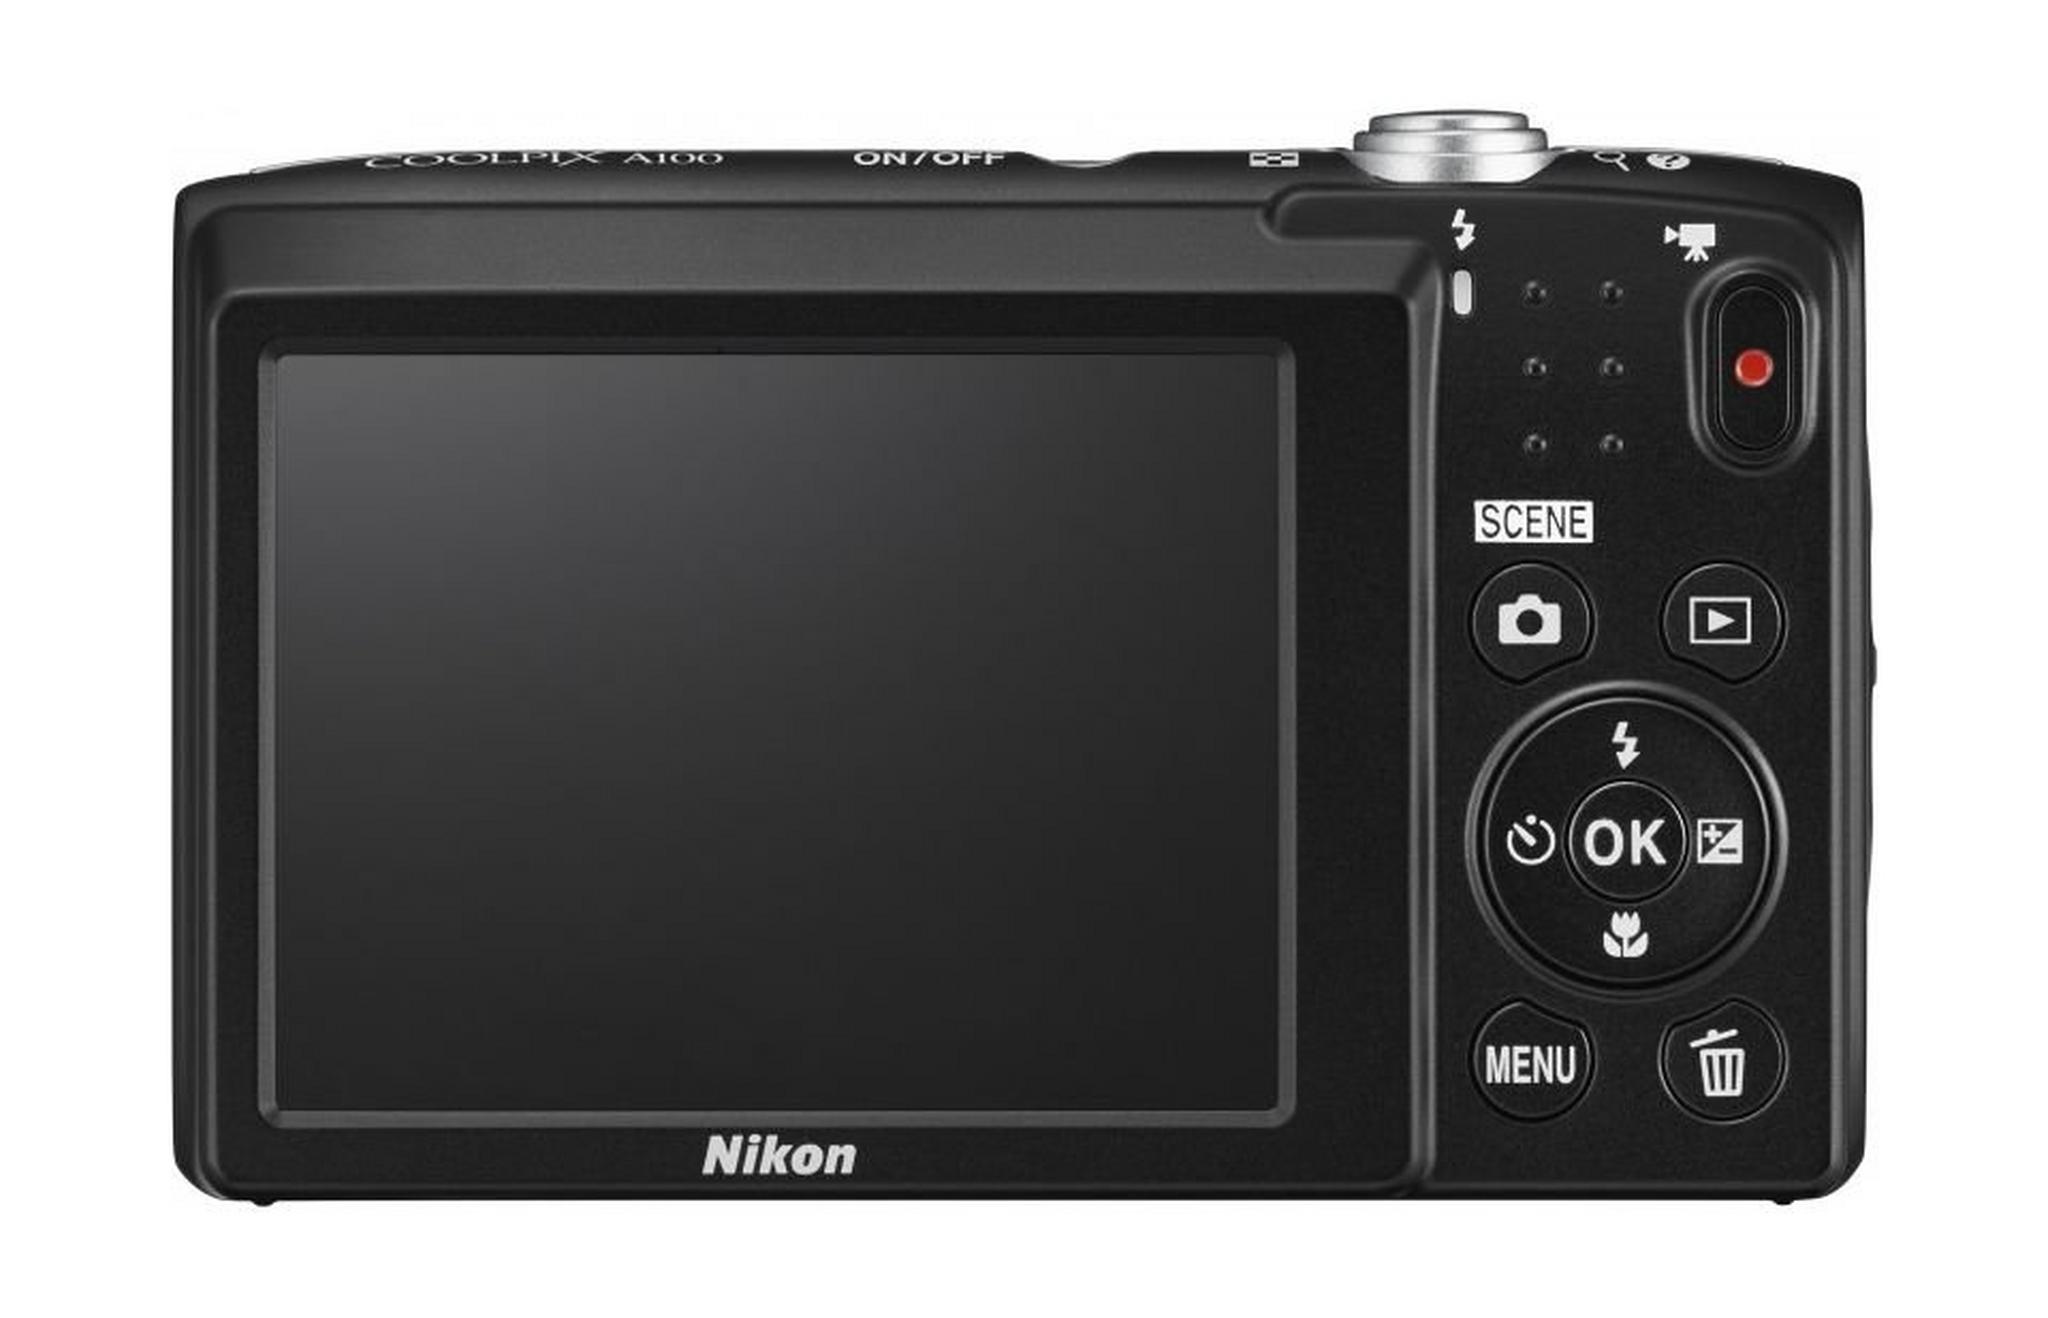 Nikon Coolpix A100 20MP Compact Digital Camera – Purple